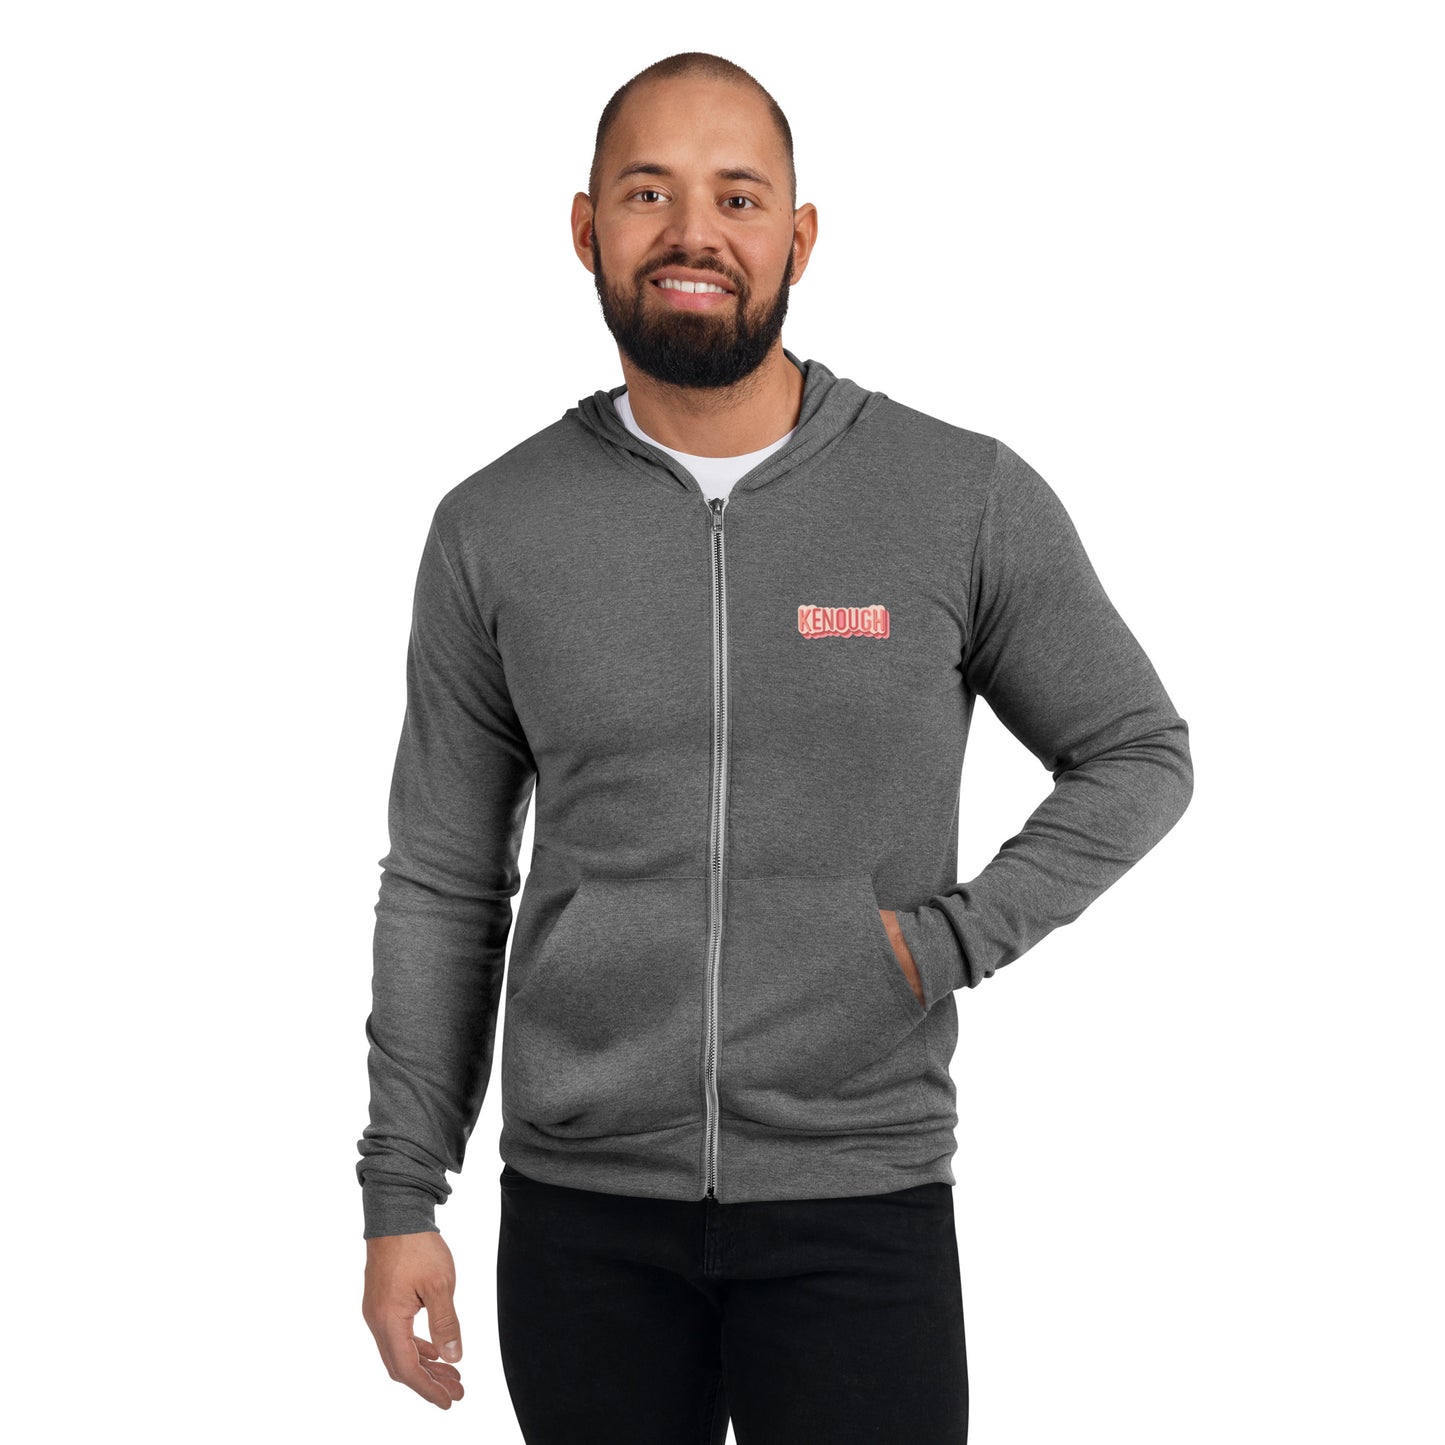 Kenough Unisex zip hoodie